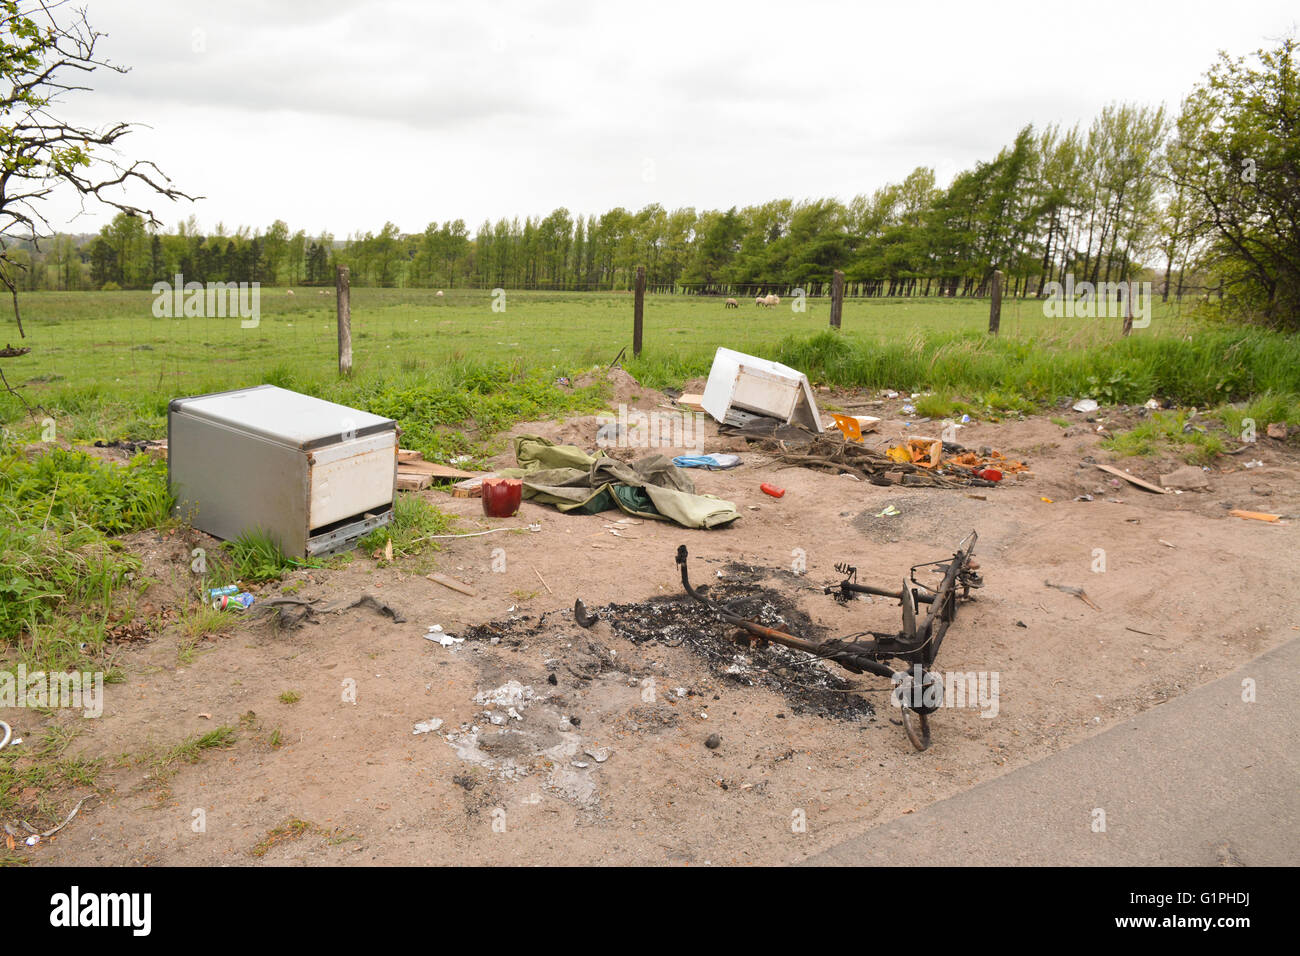 Les décharges sauvages, y compris les appareils électriques, par le côté d'un chemin rural en plaine, Airdrie, North Lanarkshire, Écosse, Royaume-Uni Banque D'Images